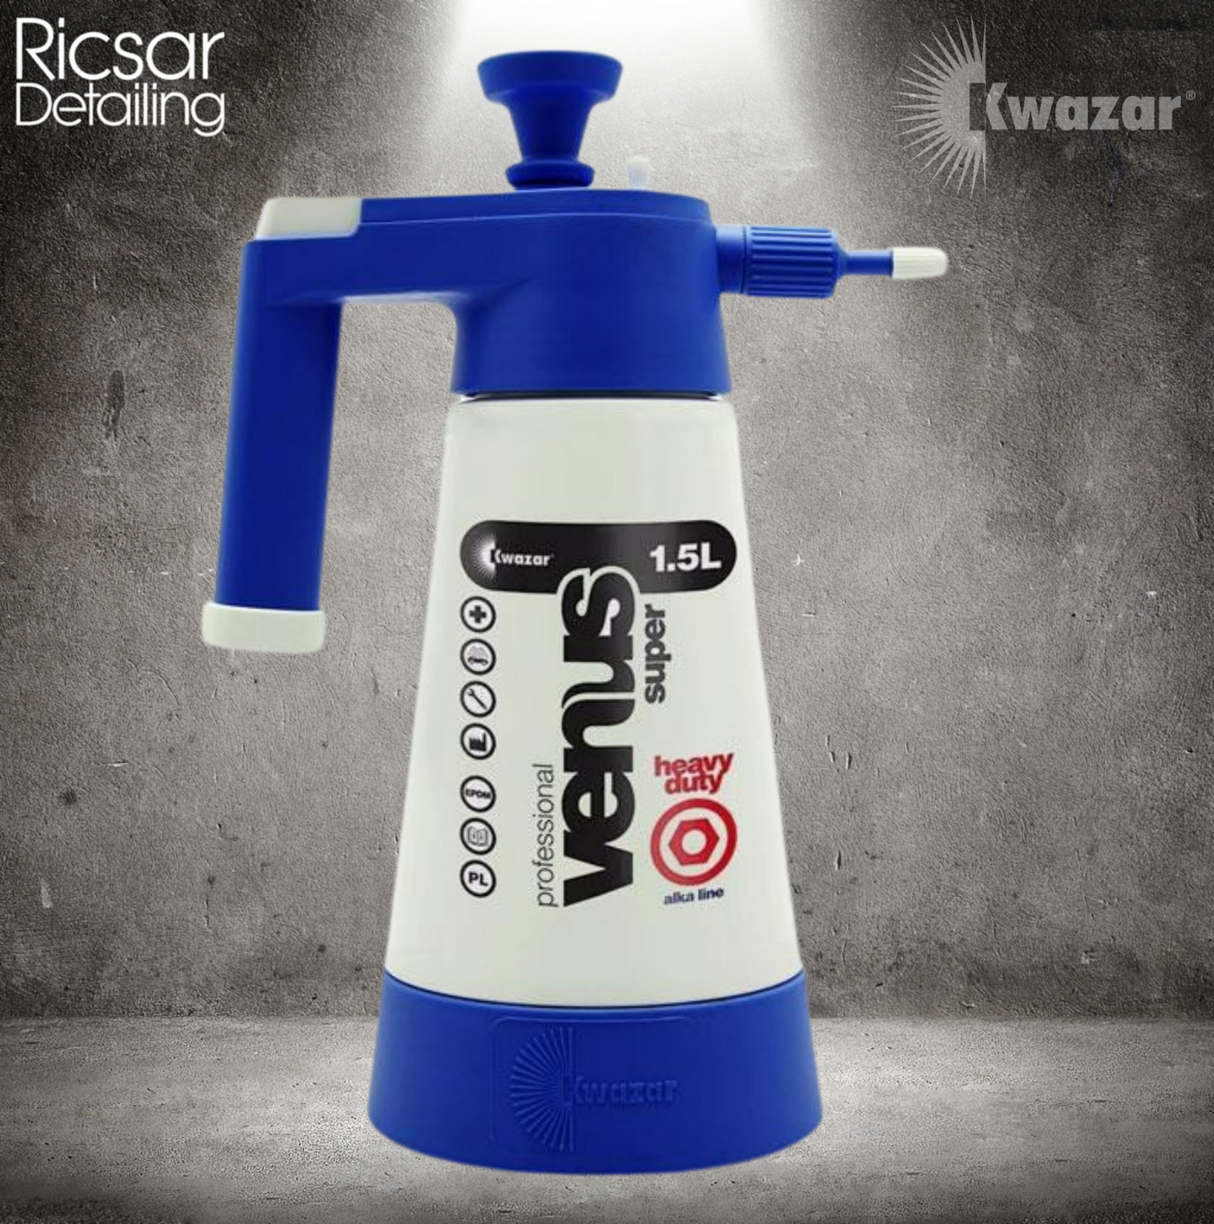 KWAZAR Venus 360 SUPER Pro + ALKALINE 1.5L Compression Sprayer With Viton Seals